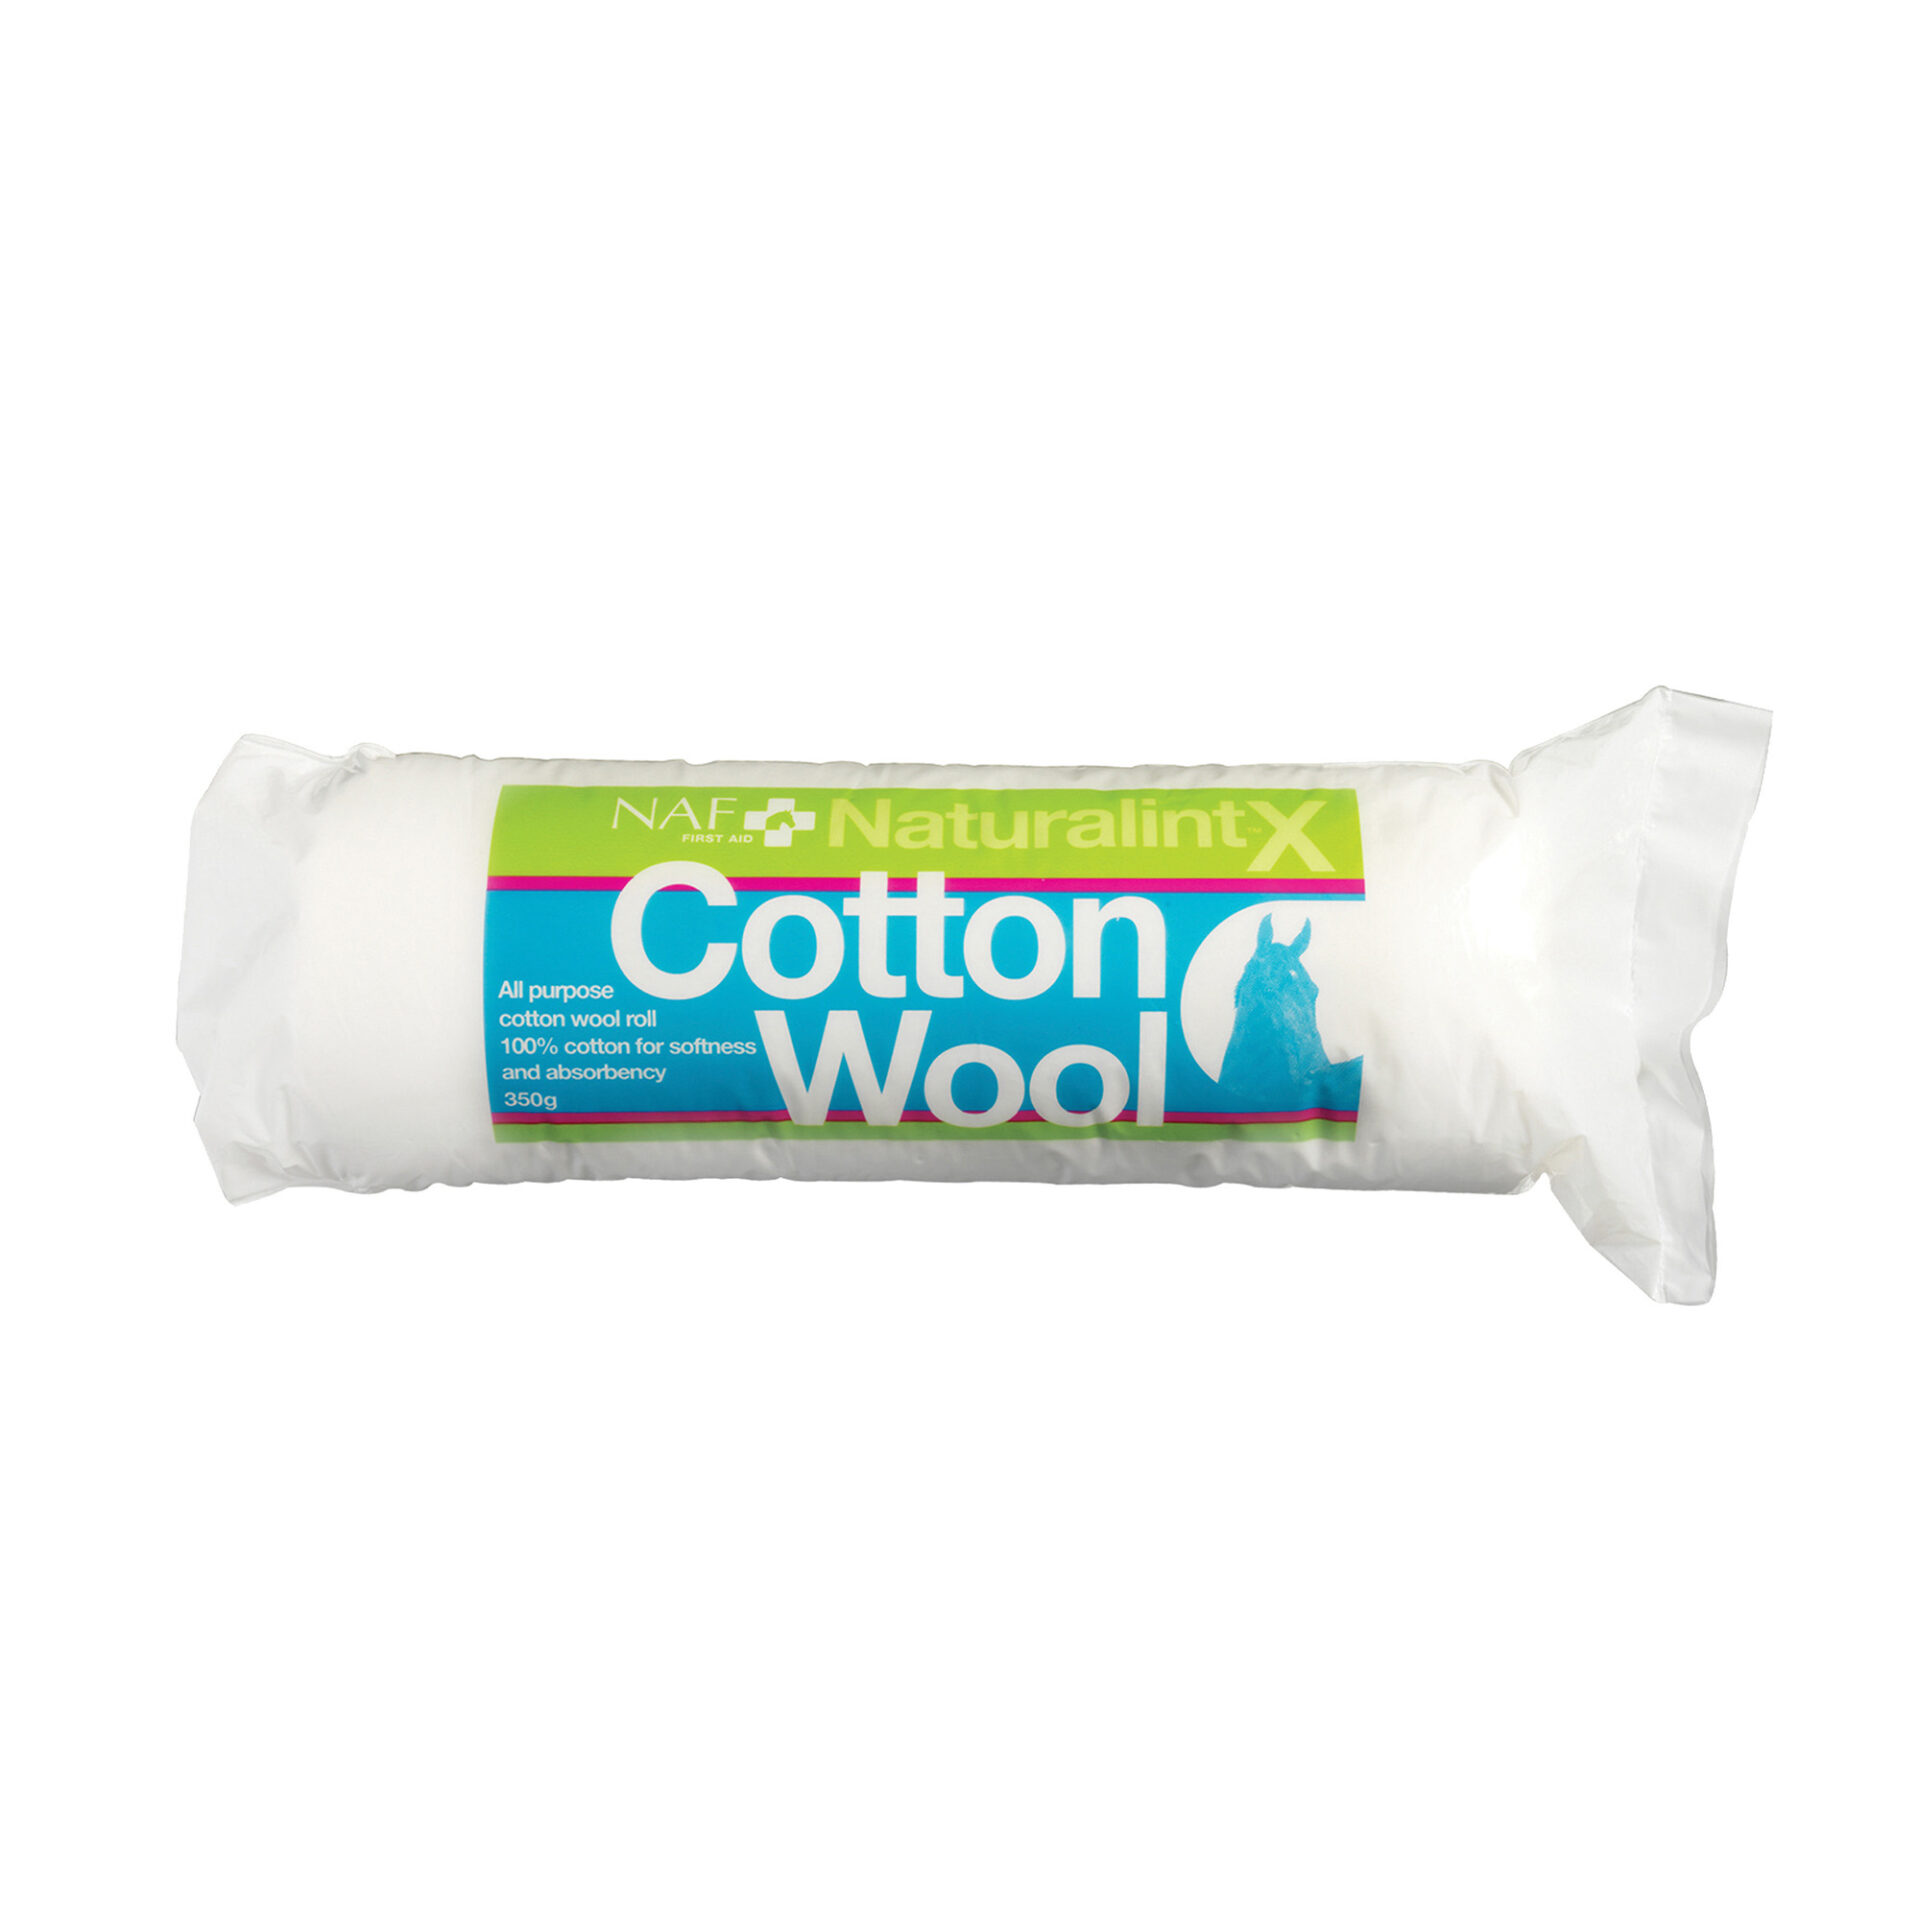 NAF NaturalintX Cotton Wool – 350g